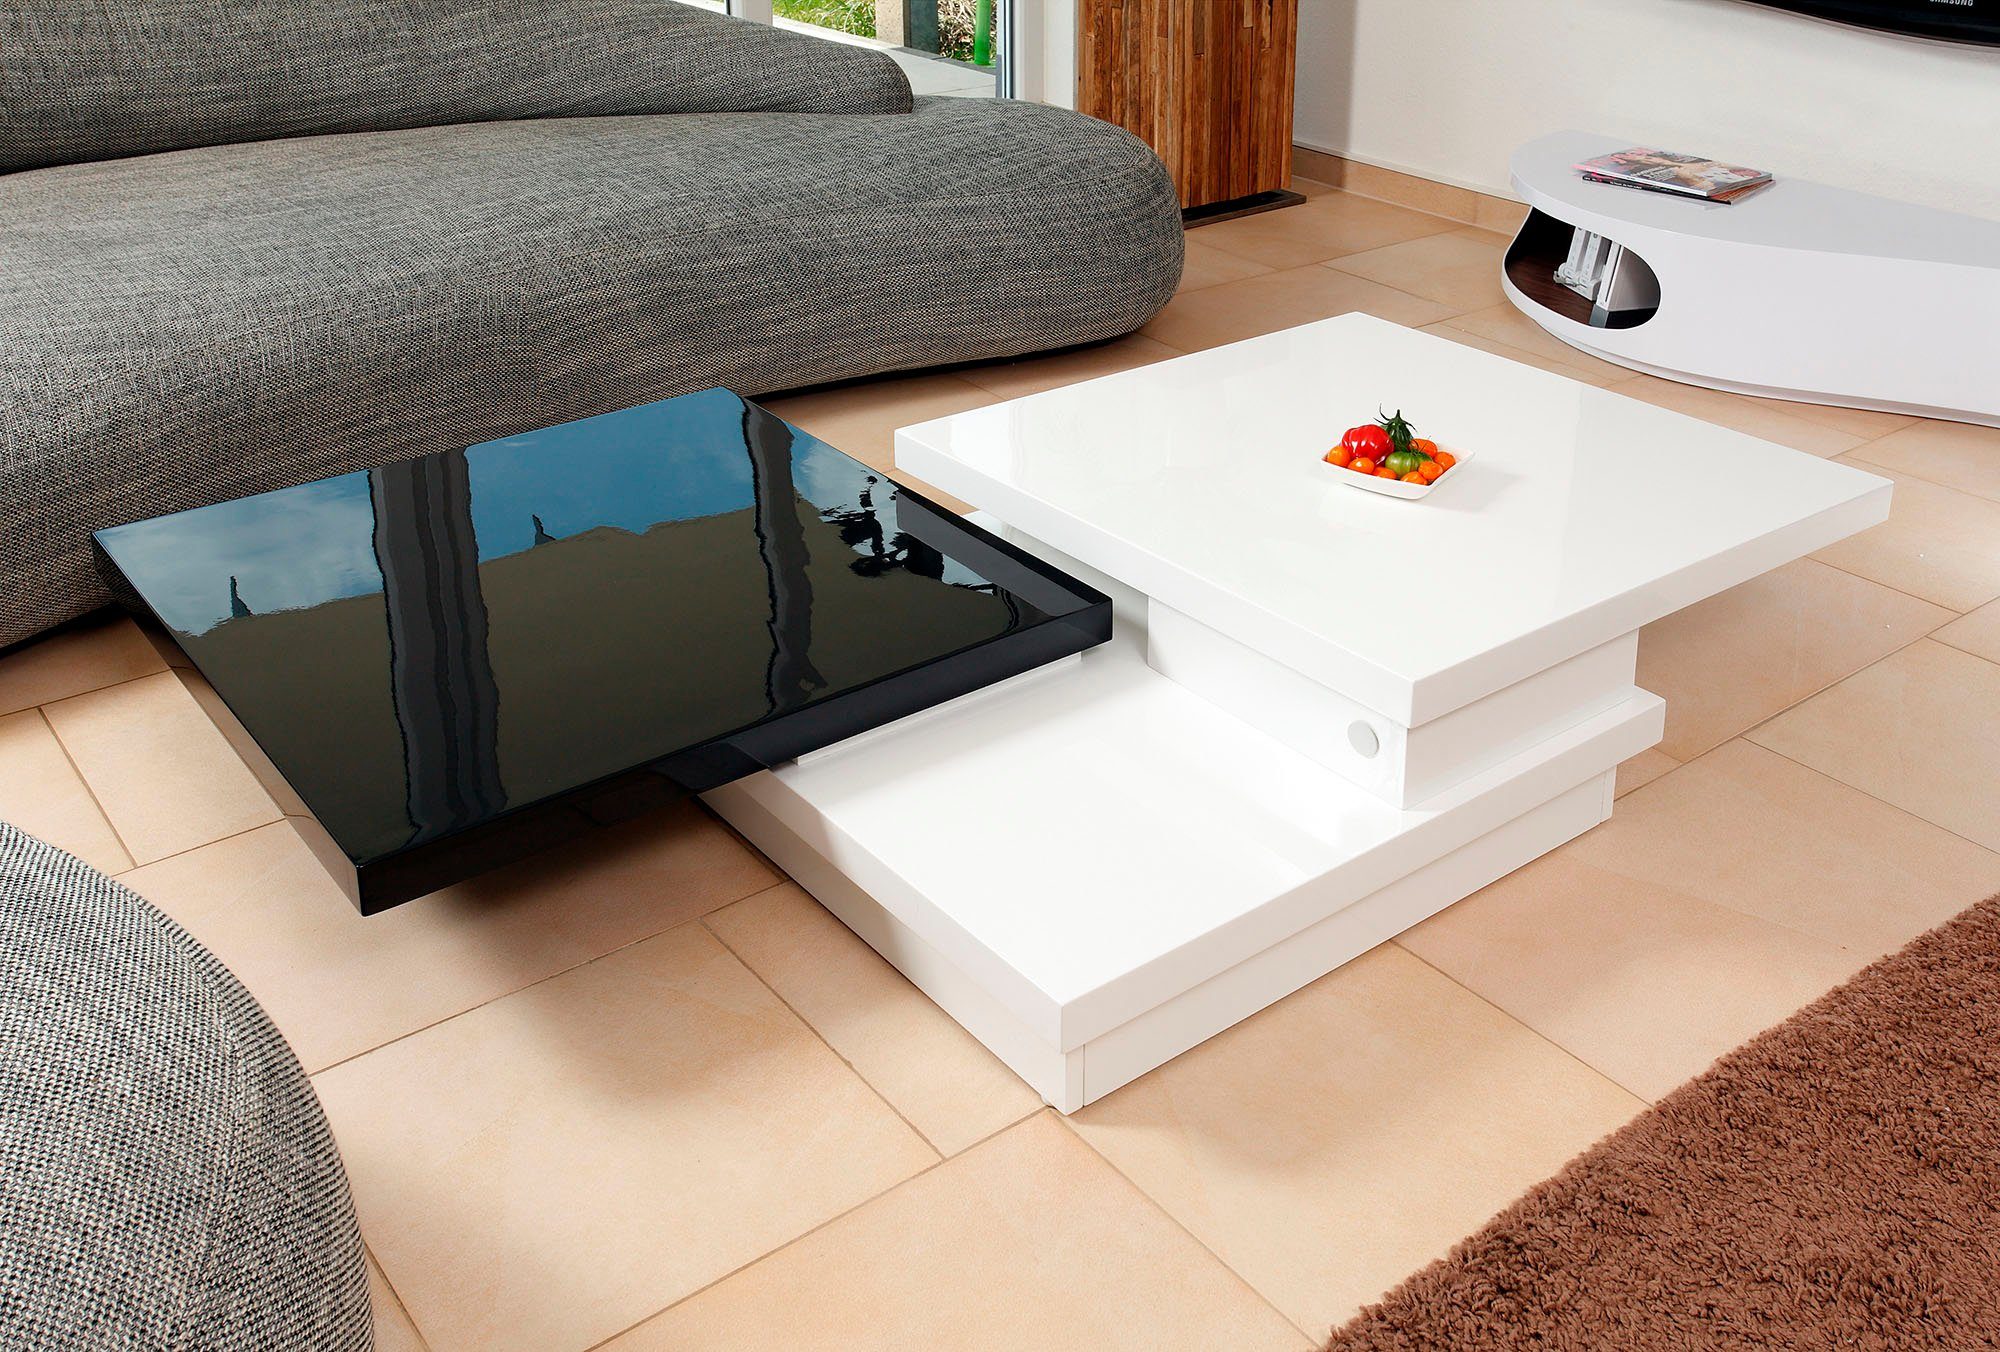 SalesFever Couchtisch, Tischplatte drehbar um 360° schwarz/weiß